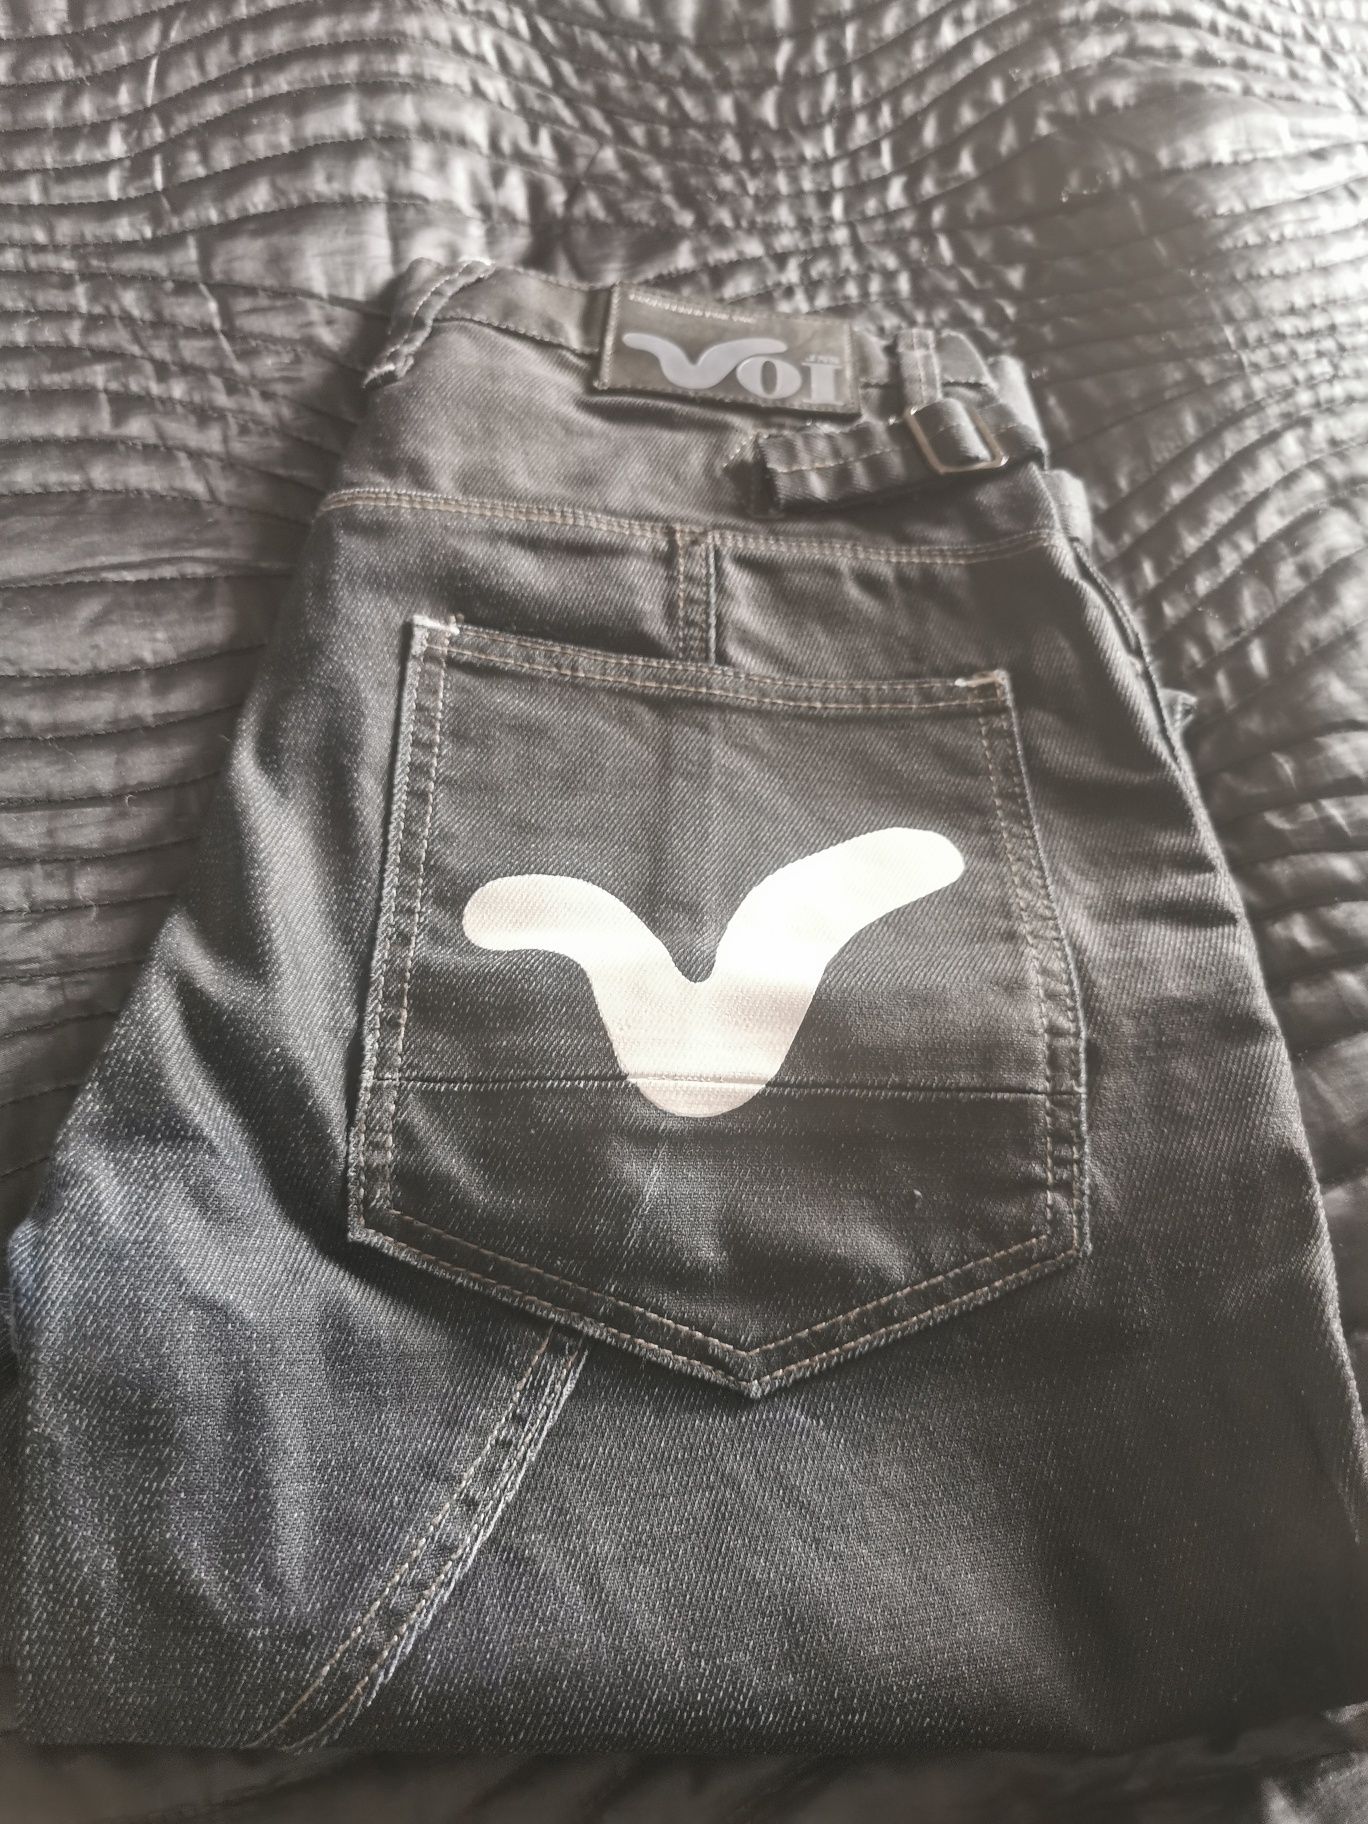 Spodnie, jeansy Voijns s 30